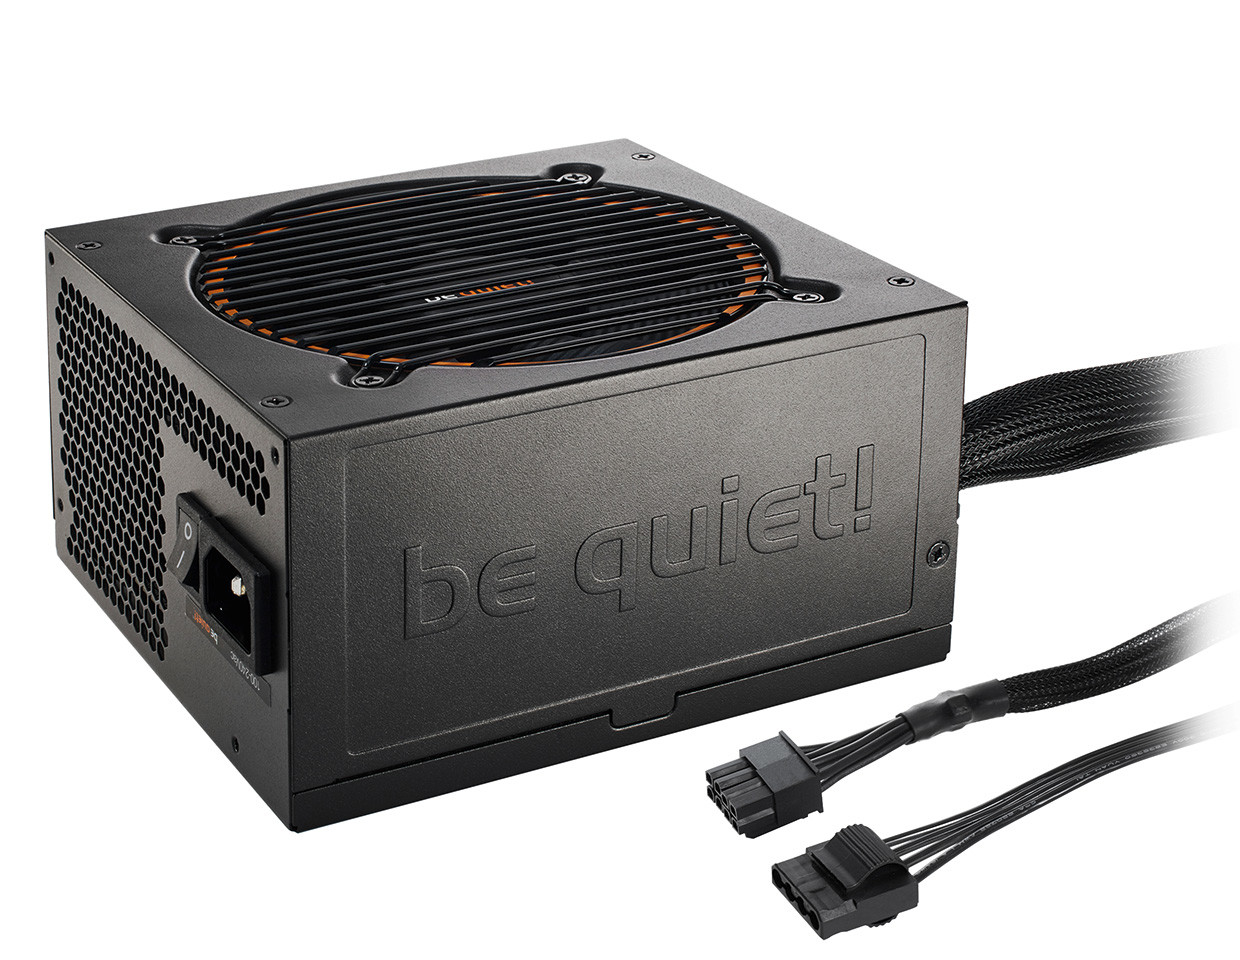 Η BeQuiet! ανακοίνωσε τα νέα τροφοδοτικά Pure Power 9 CM